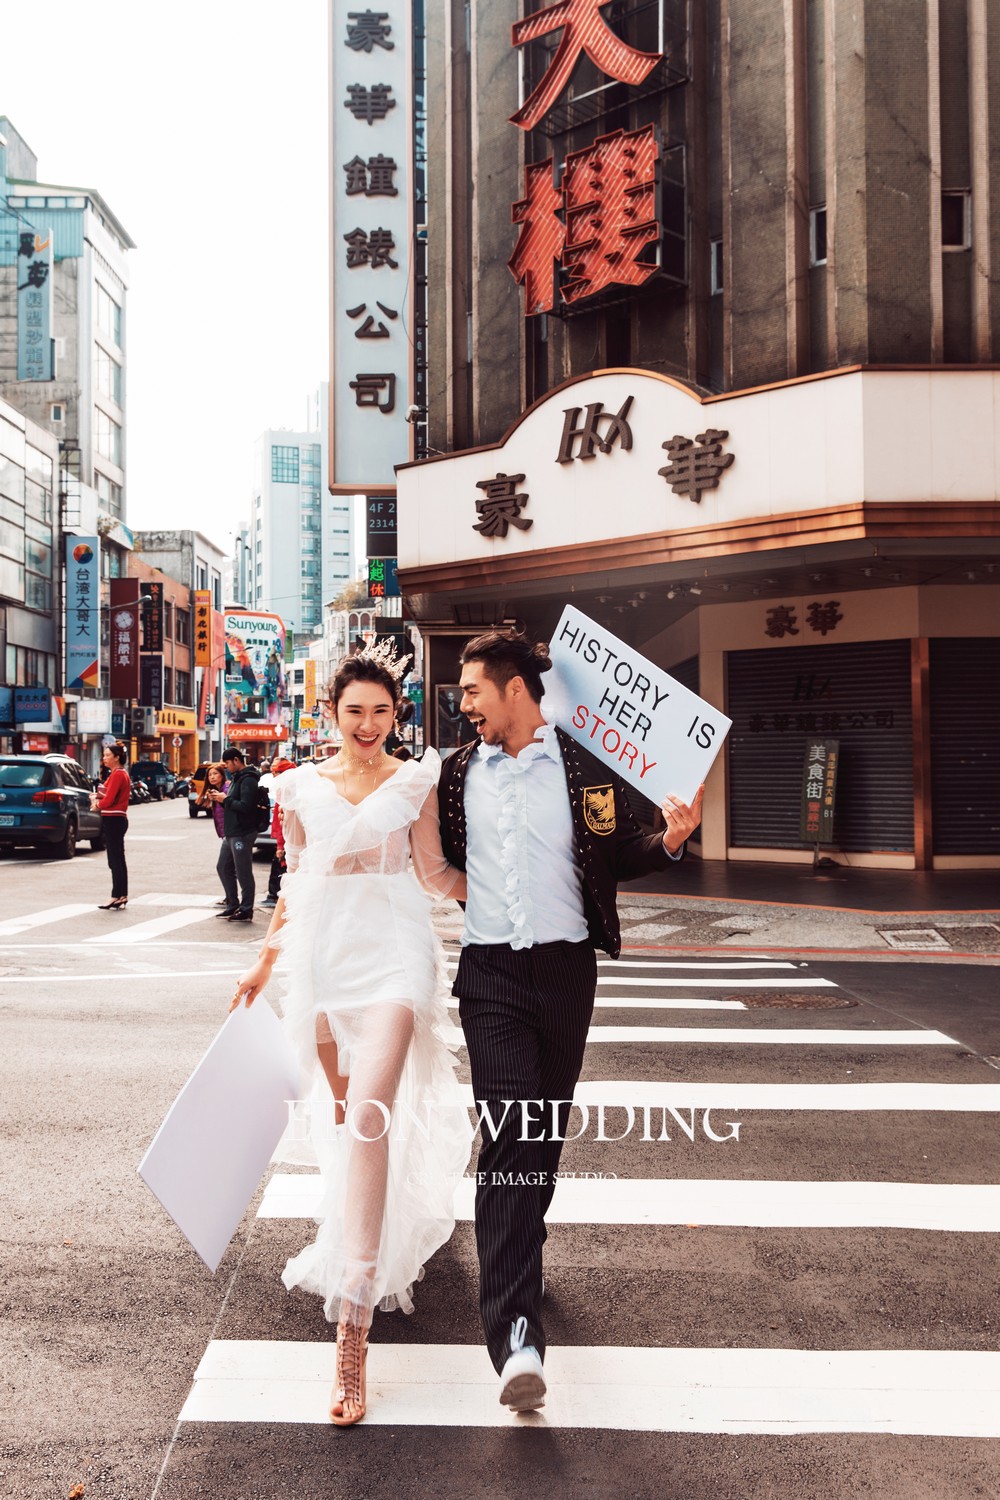 婚紗攝影,婚紗照,台北拍婚紗,台北 婚紗照,婚紗攝影推薦,婚紗照風格,婚禮攝影,婚攝,婚禮記錄,婚禮錄影